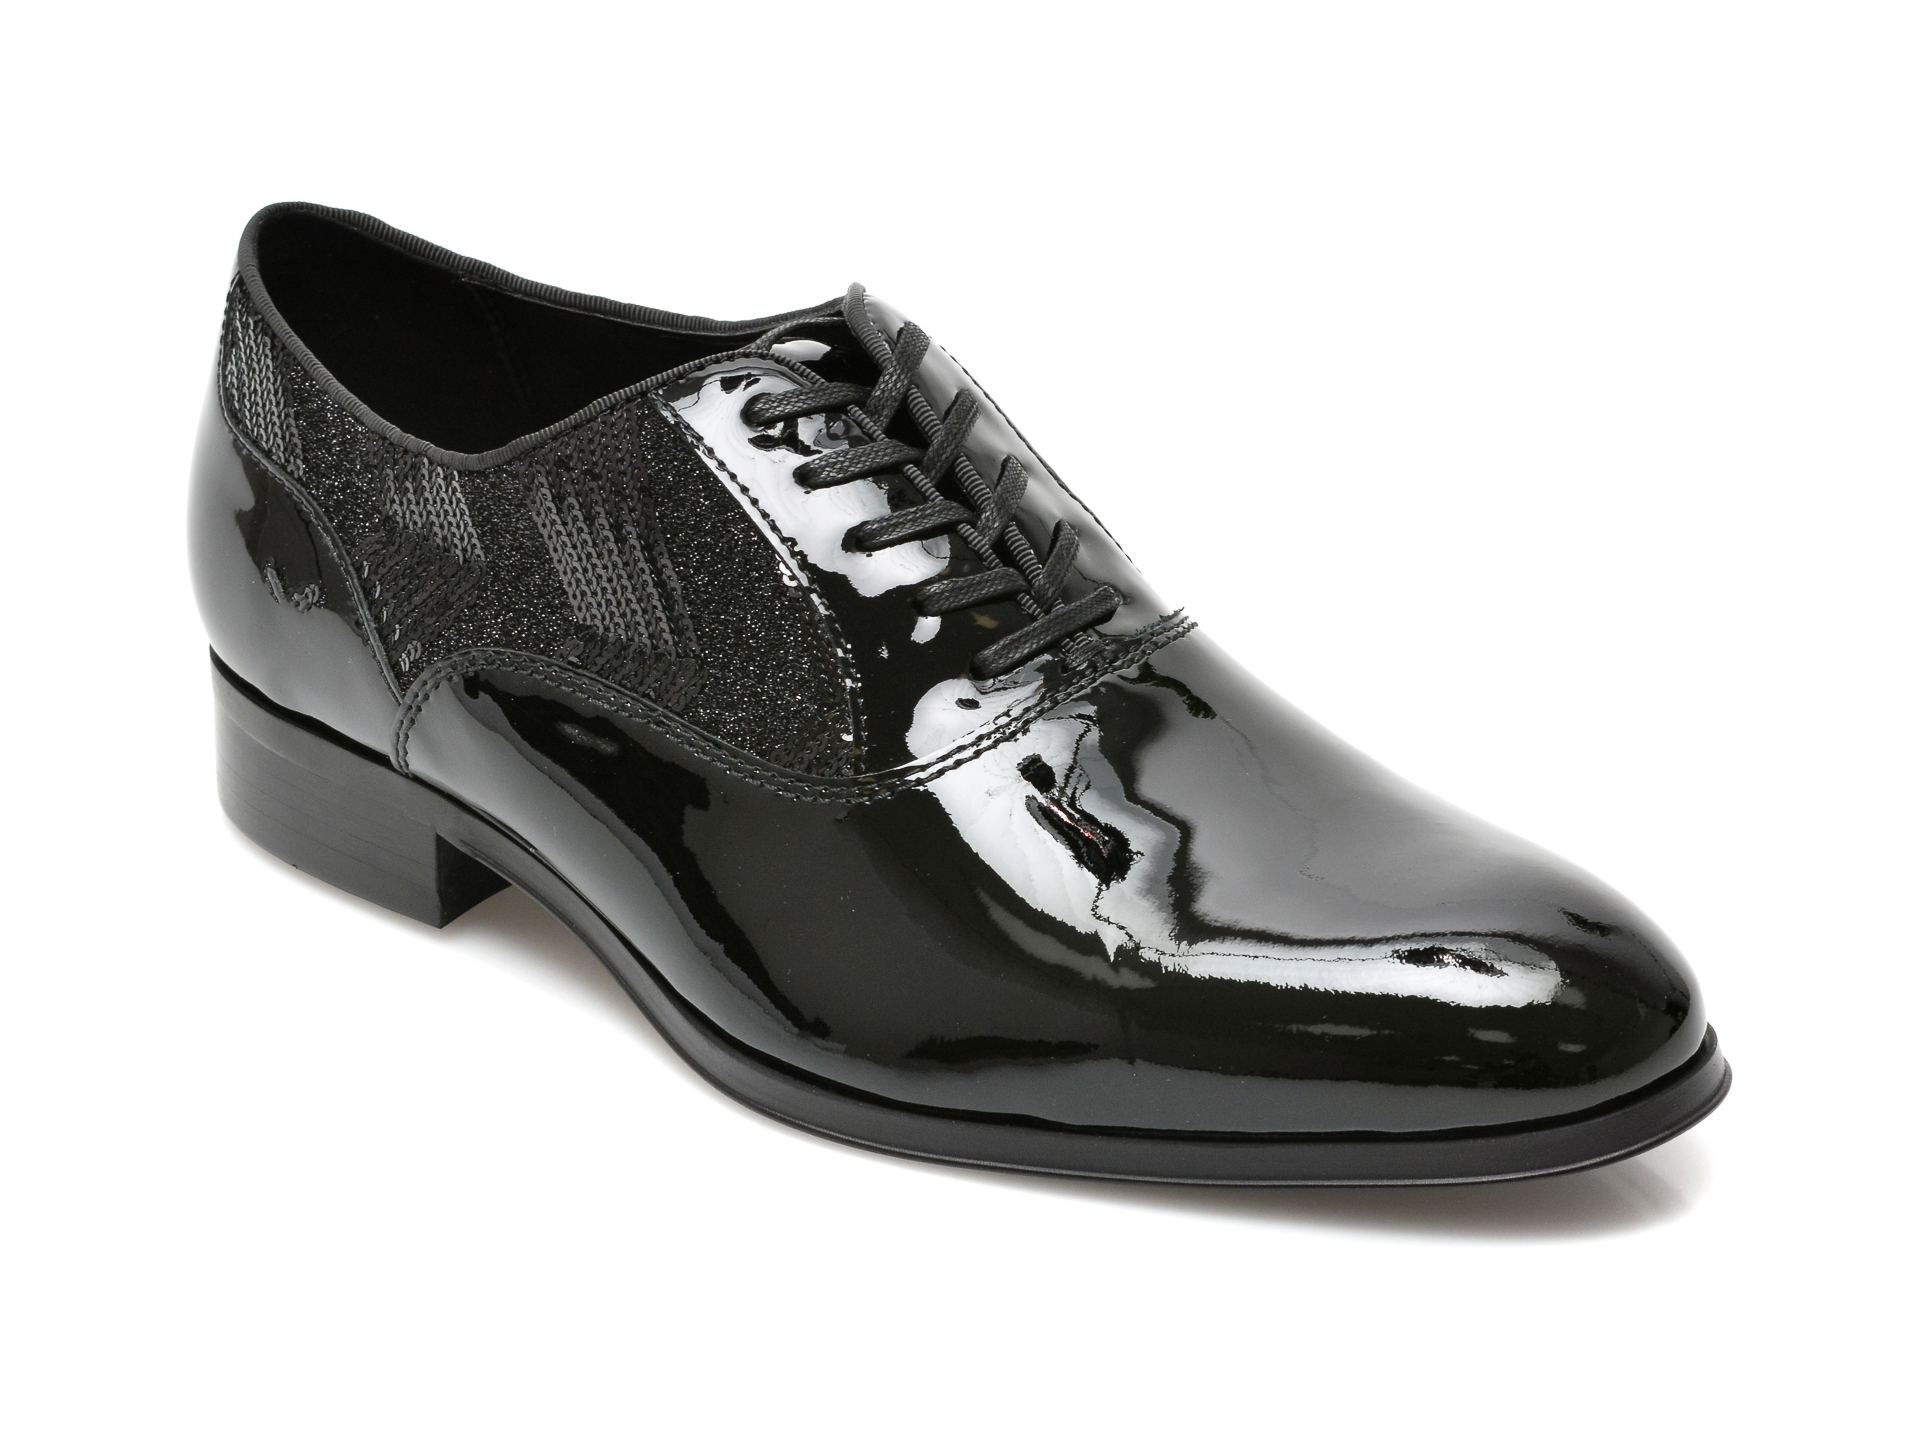 Pantofi ALDO negri, RIDGE004, din piele naturala lacuita Aldo